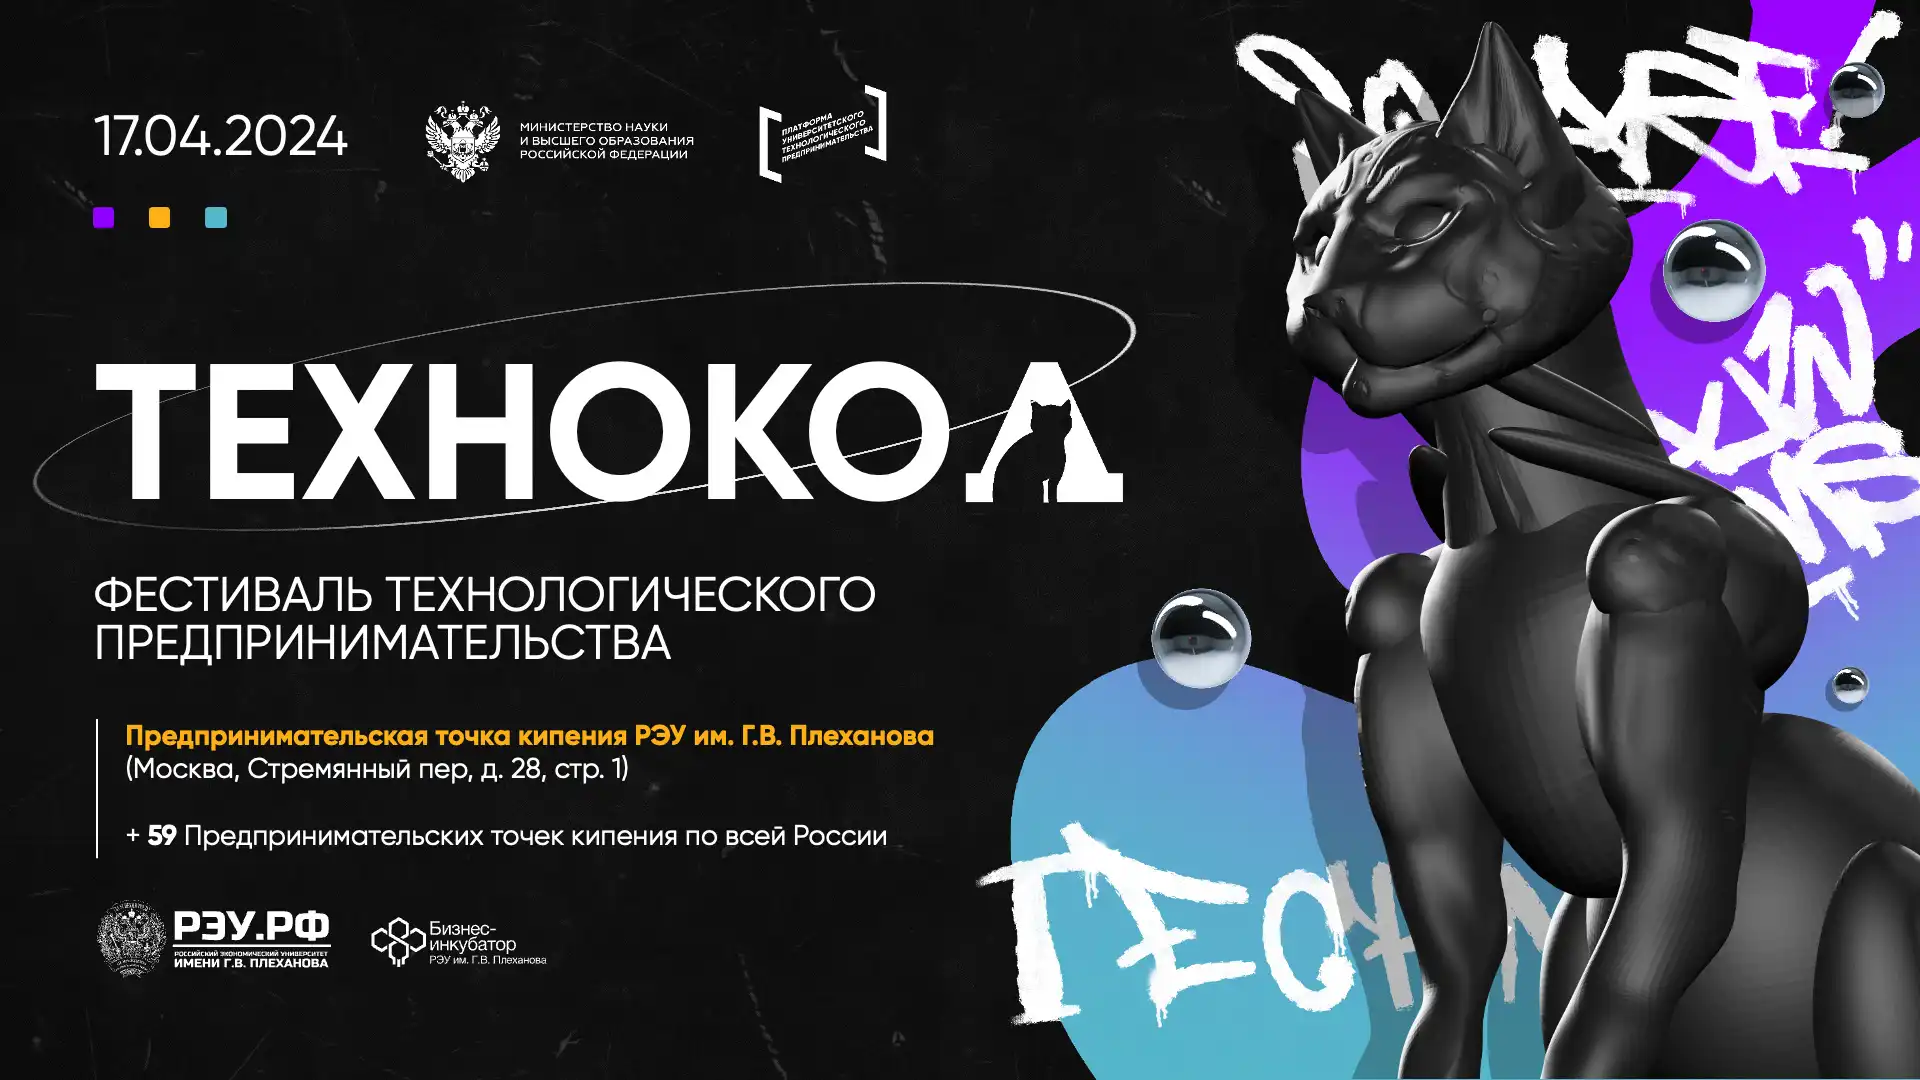 Технокод 2024 – фестиваль технологического предпринимательства в Севастополе